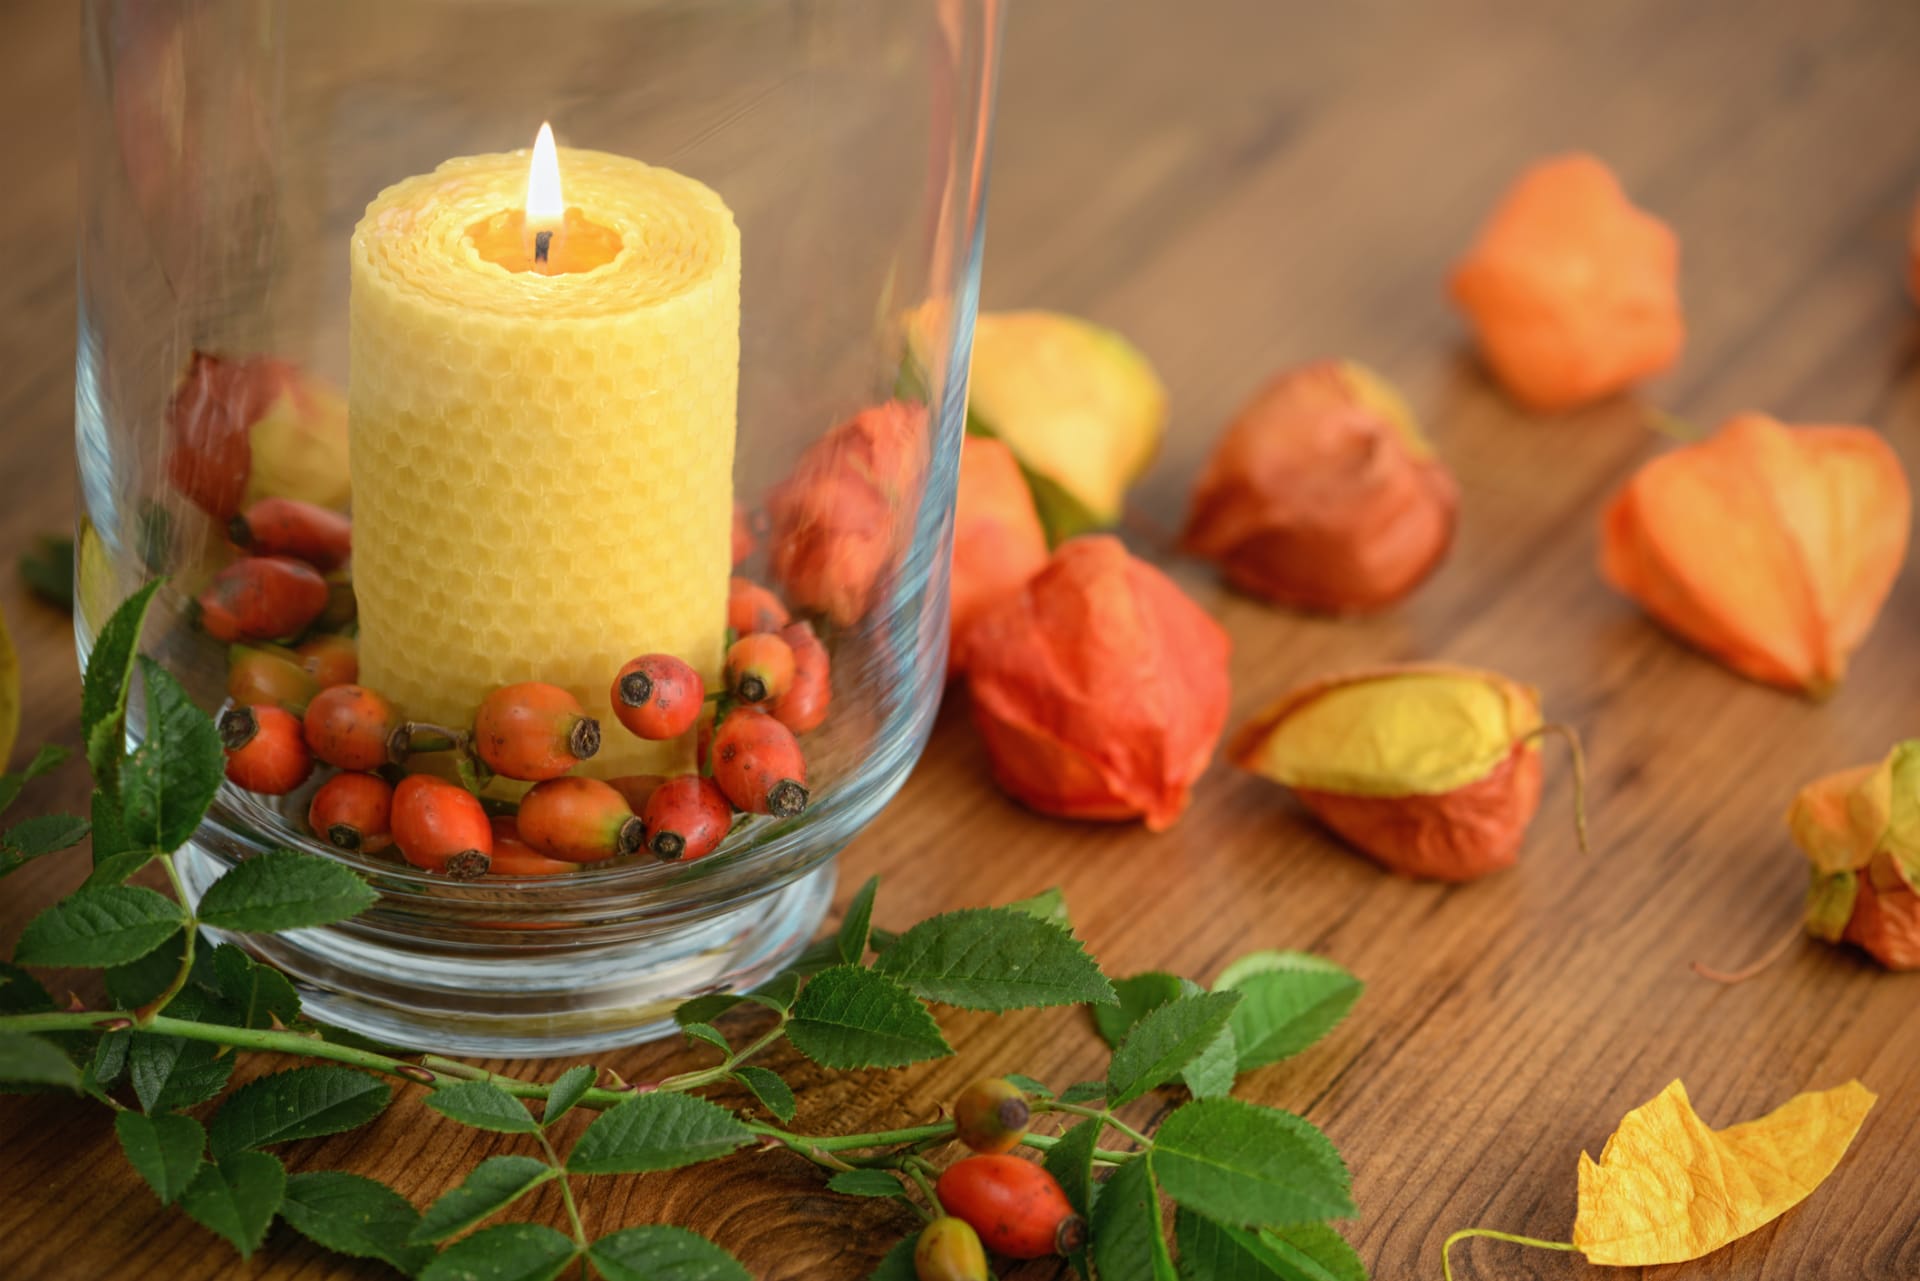 Podzimní svíčky: Sklenici můžete naplnit podzimními plodinami. Krásně vypadá červená jeřabina nebo šípek, můžete ale přihodit i několik žaludů nebo menších kaštanů.